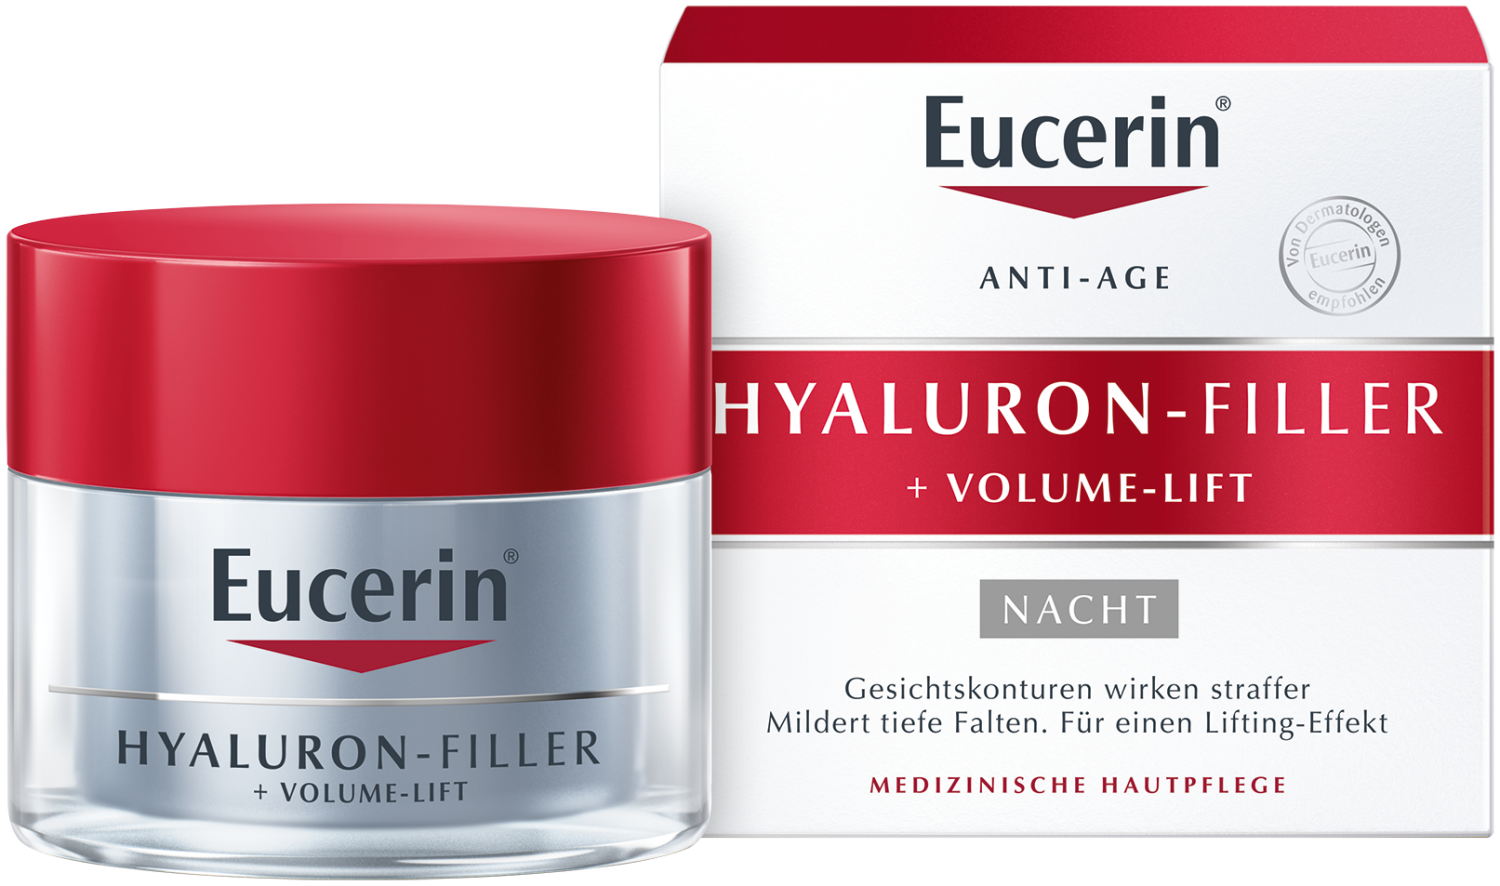 Крем Eucerin Hyaluron-Filler + Volume-Lift ночной 50 мл. Крем Eucerin Hyaluron-Filler для лица дневной. Крем для лица Eucerin Hyaluron-Filler 50 мл ночной. Эуцерин Гиалурон-филлер ночной крем 50мл.